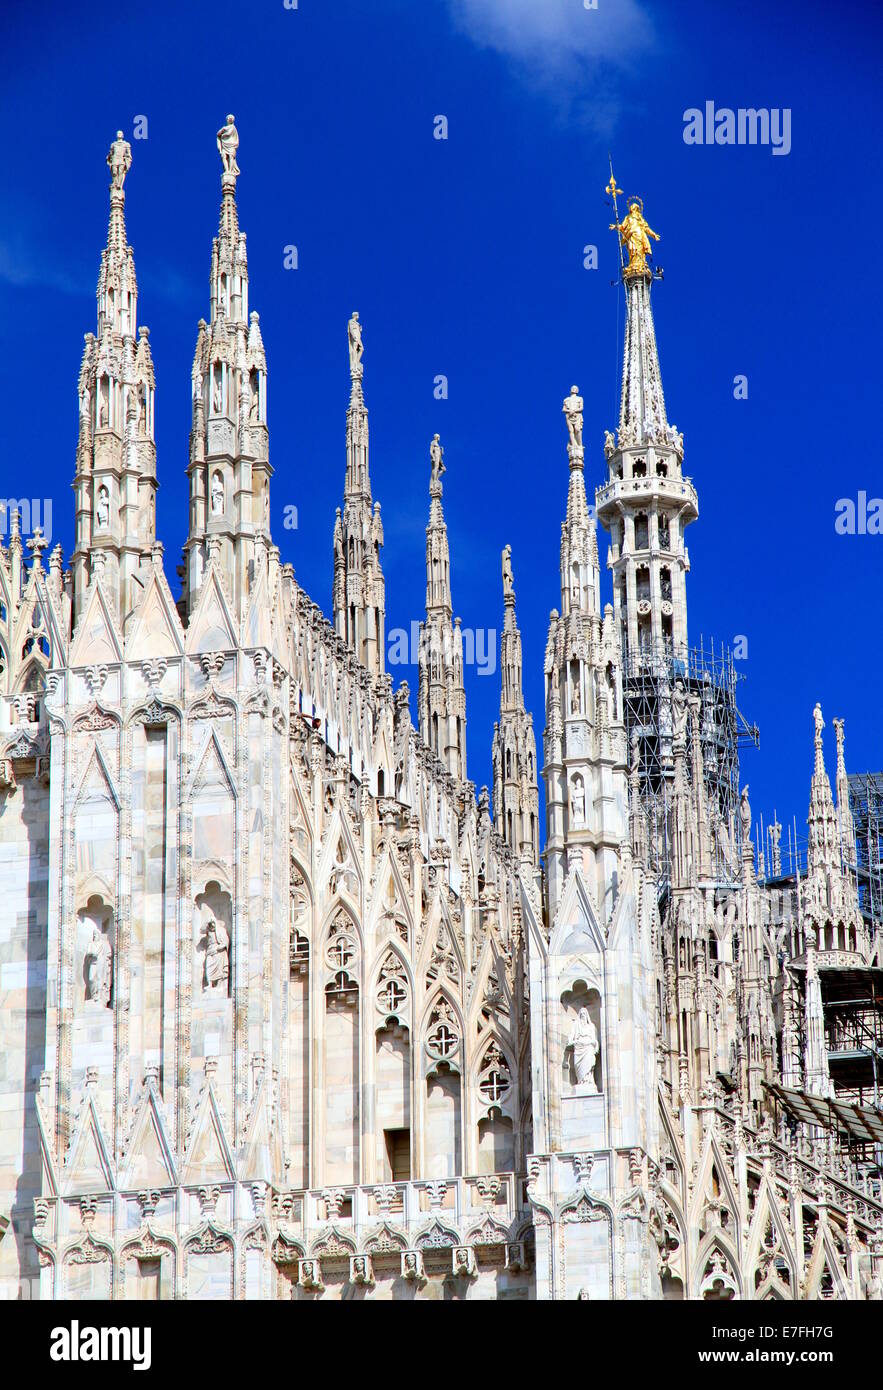 Statuen und Madonnina an der Spitze der Kathedrale Duomo in Mailand, Italien Stockfoto